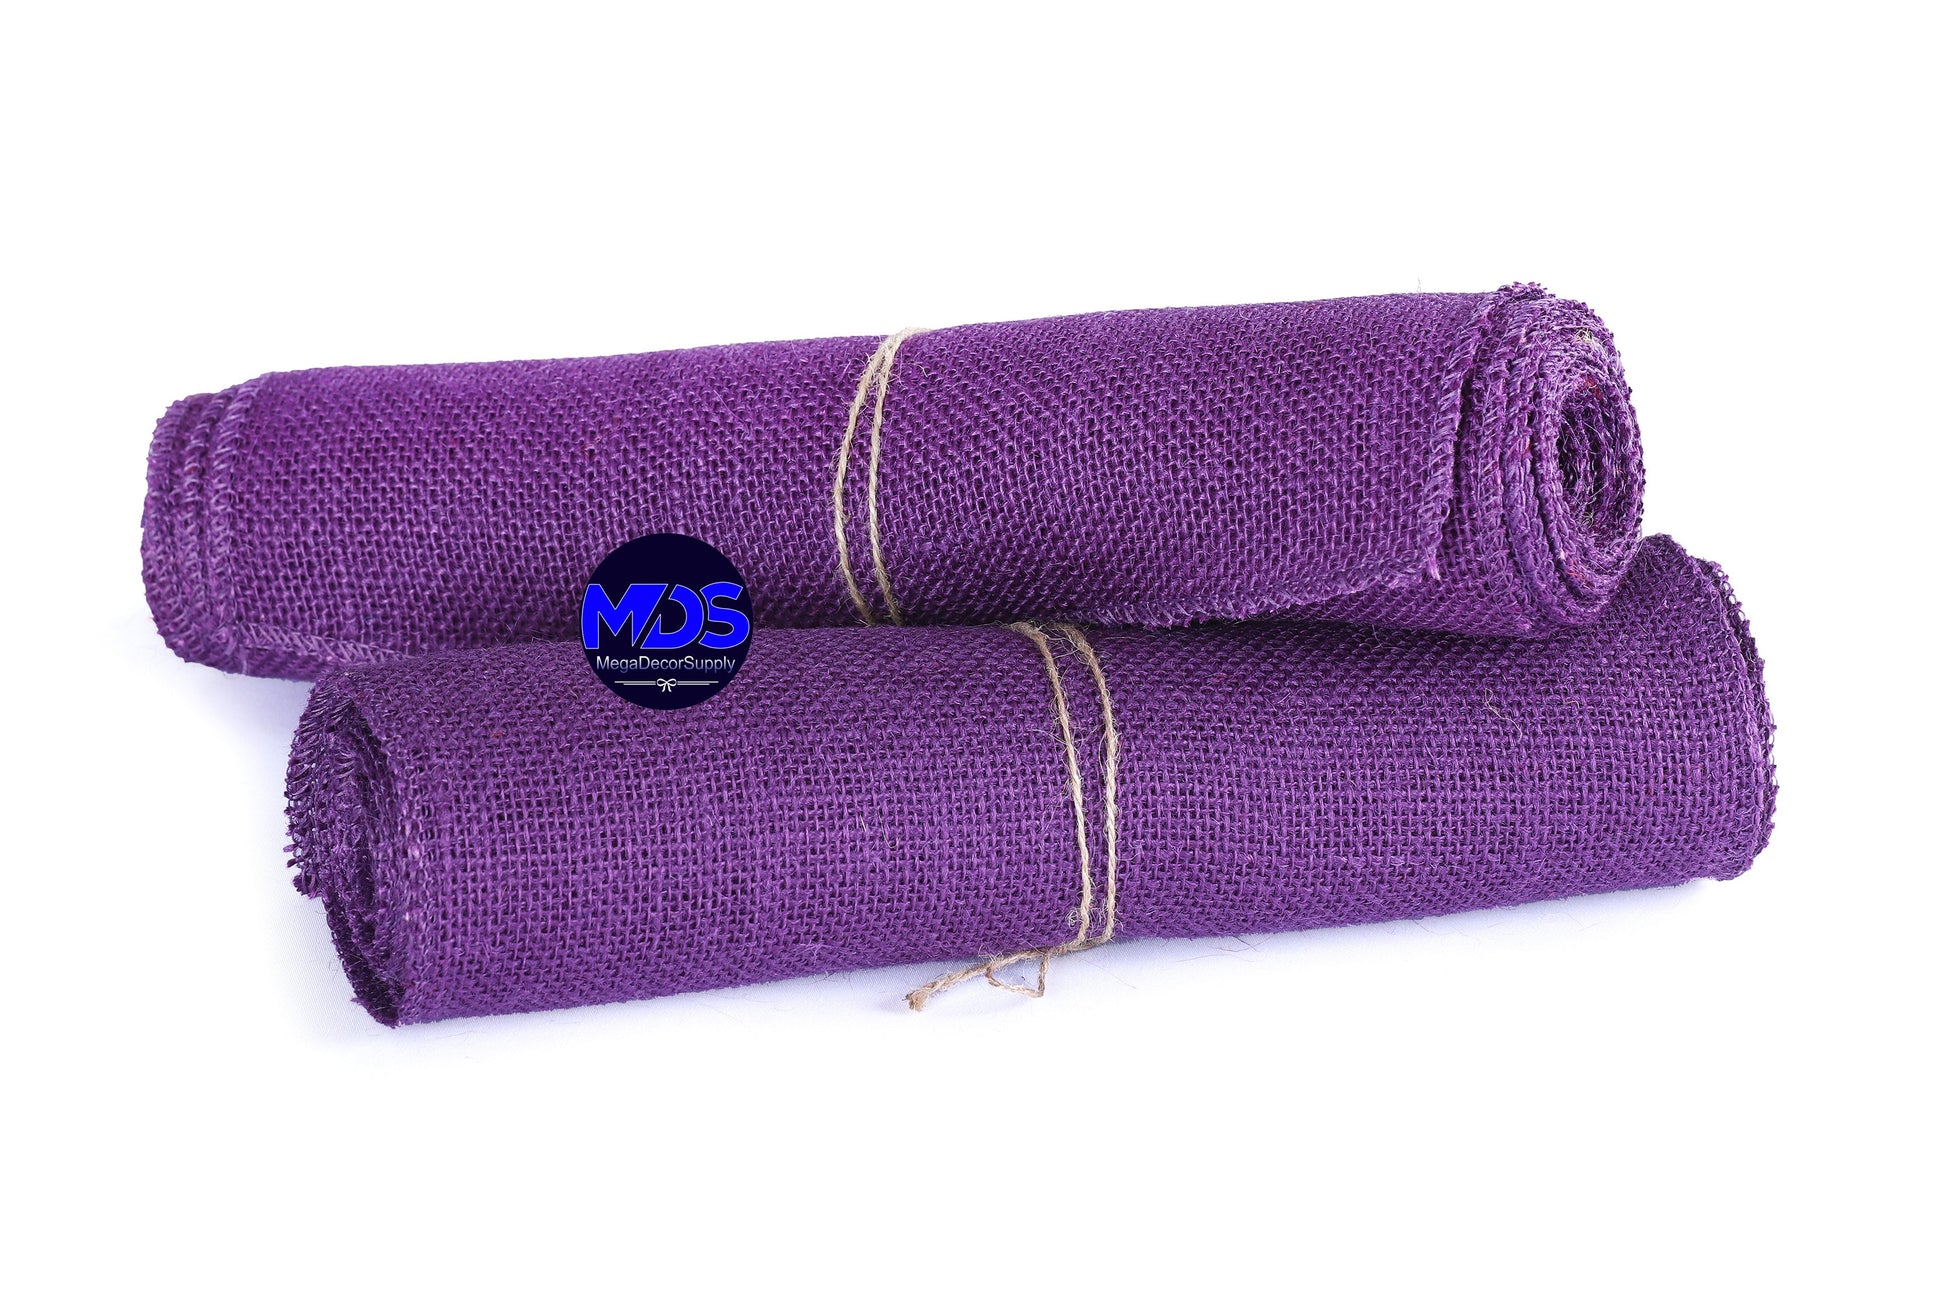 Cadbury Purple,f7a7710c-3491-47fa-bed1-3ab38ddc1fa6